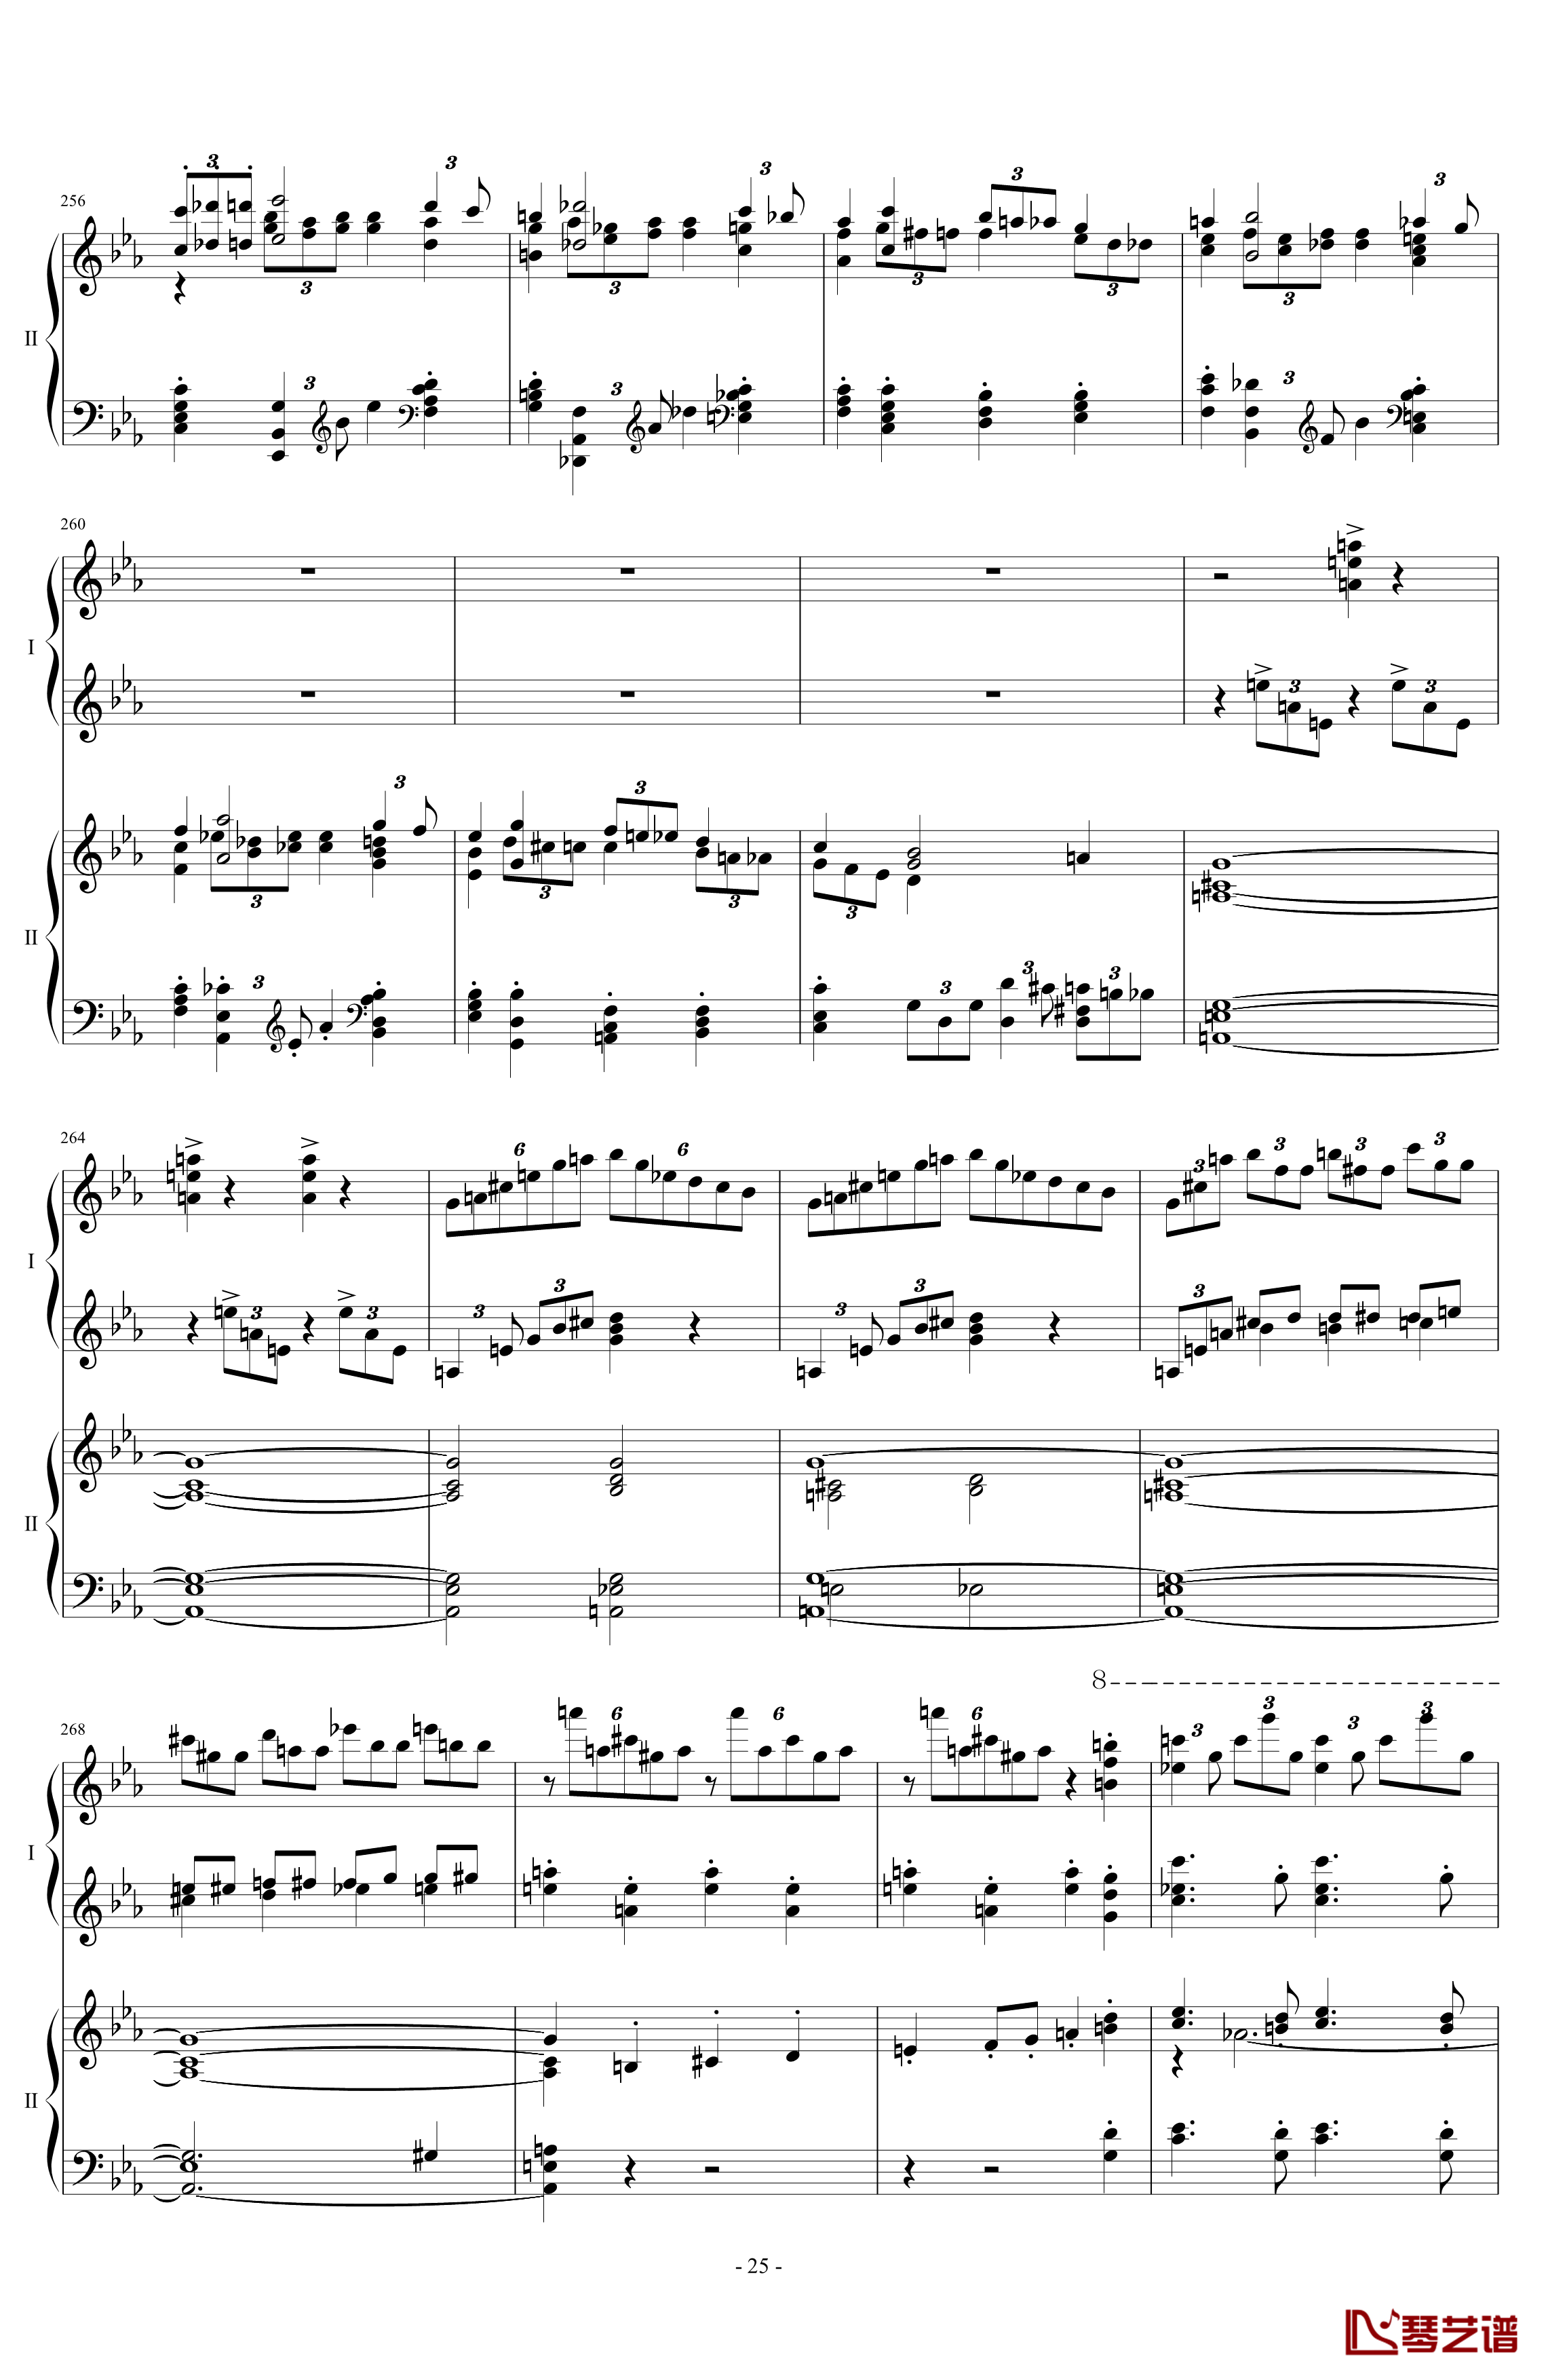 拉三第三乐章41页双钢琴钢琴谱-最难钢琴曲-拉赫马尼若夫25